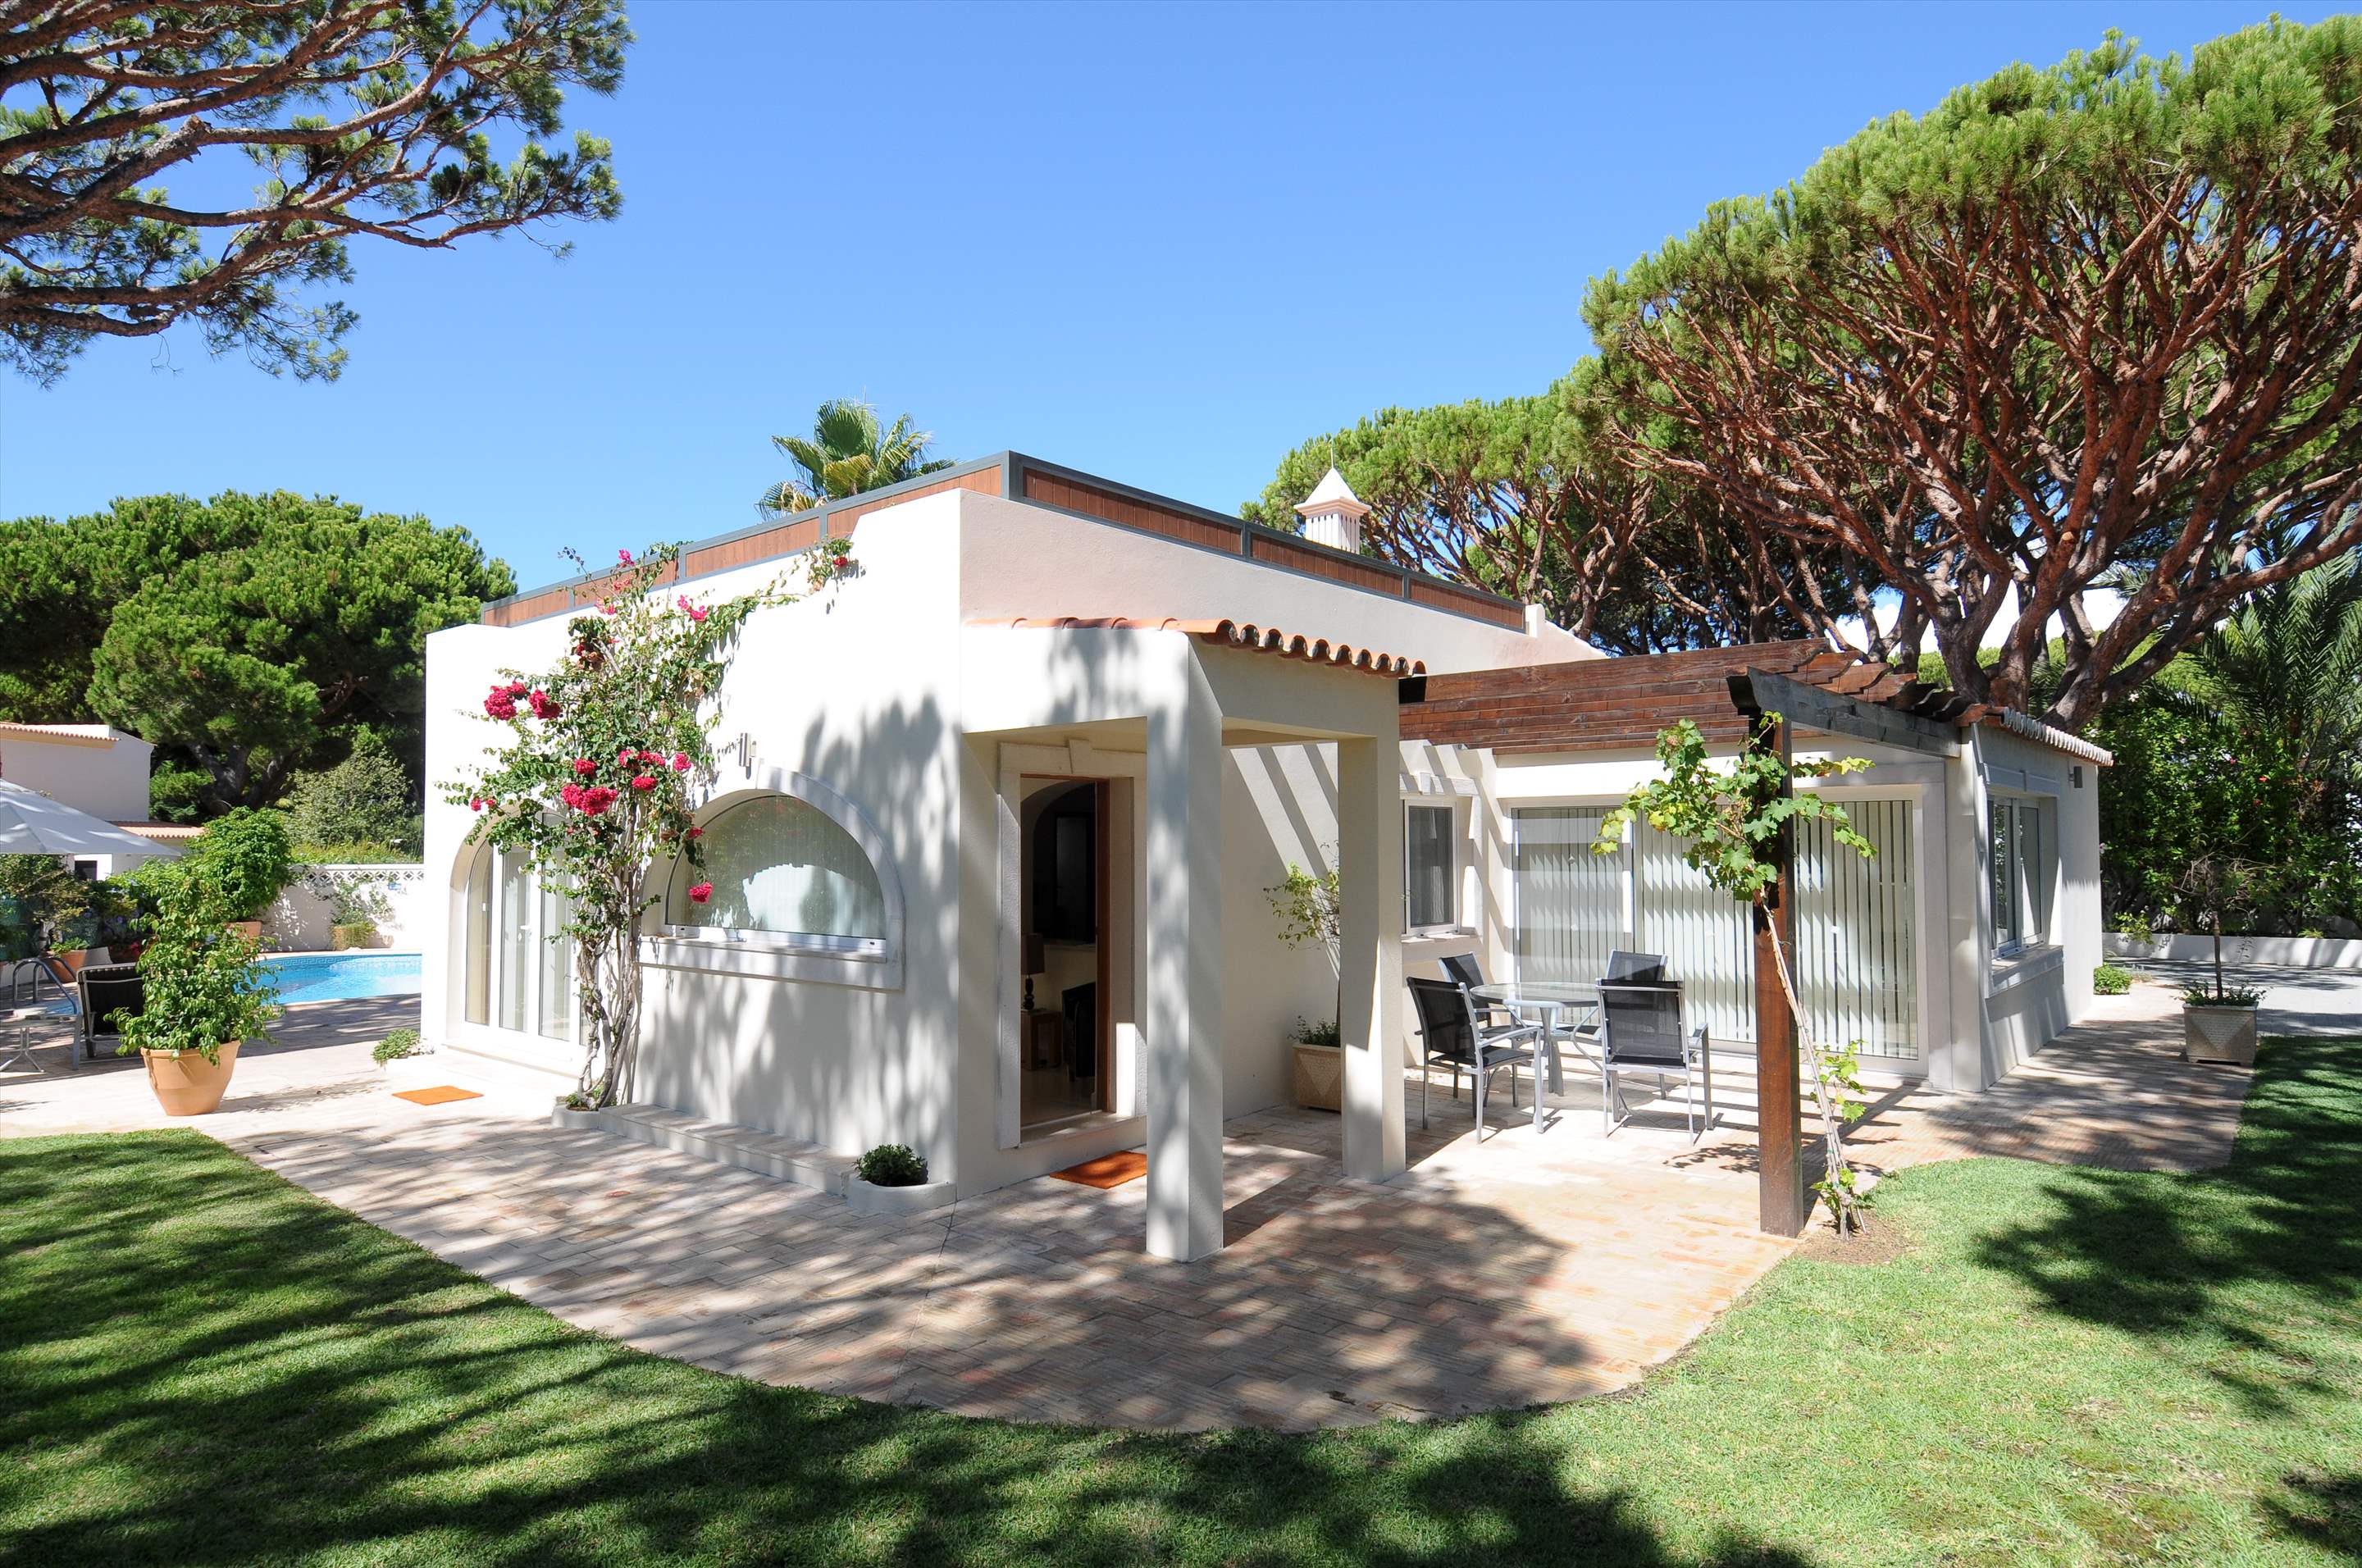 Casa Blanca, 3 Bed Rental, 3 bedroom villa in Vale do Lobo, Algarve Photo #2